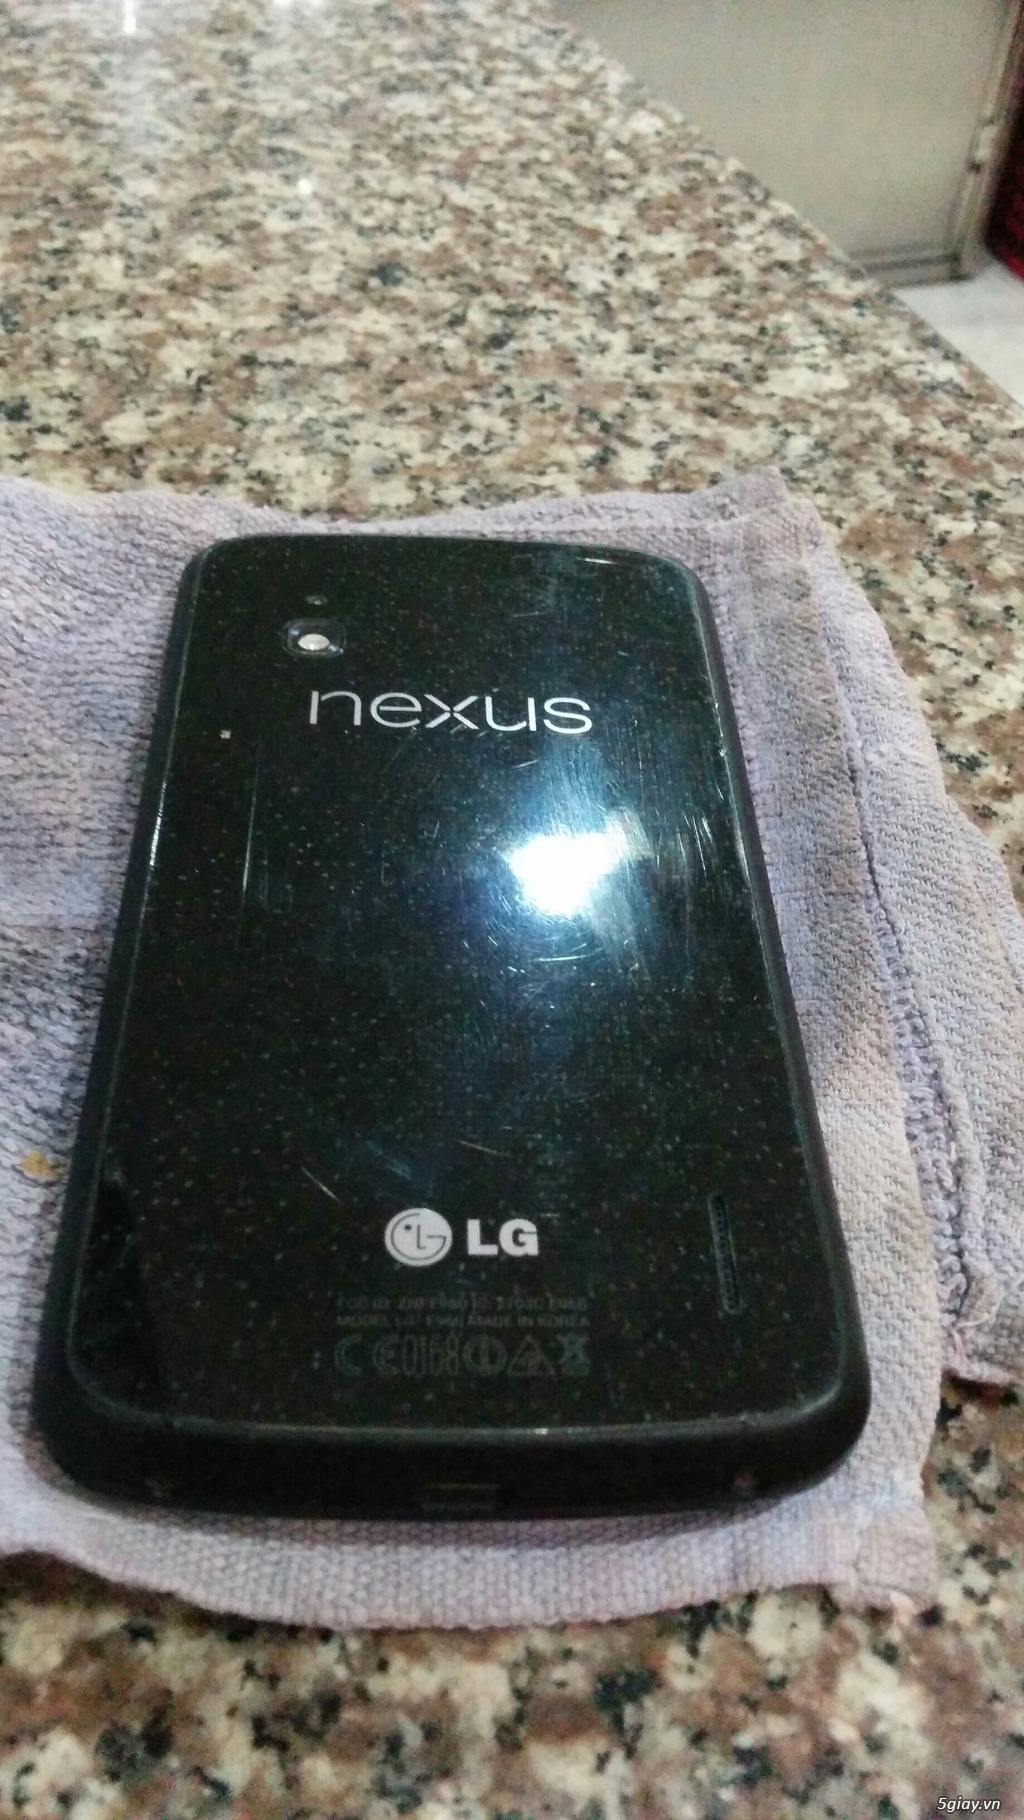 Nexus 5 16GB.Nexus 4 16GB.Nokia 225.Nokia 6670 cần bán hoặc giao lưu - 6